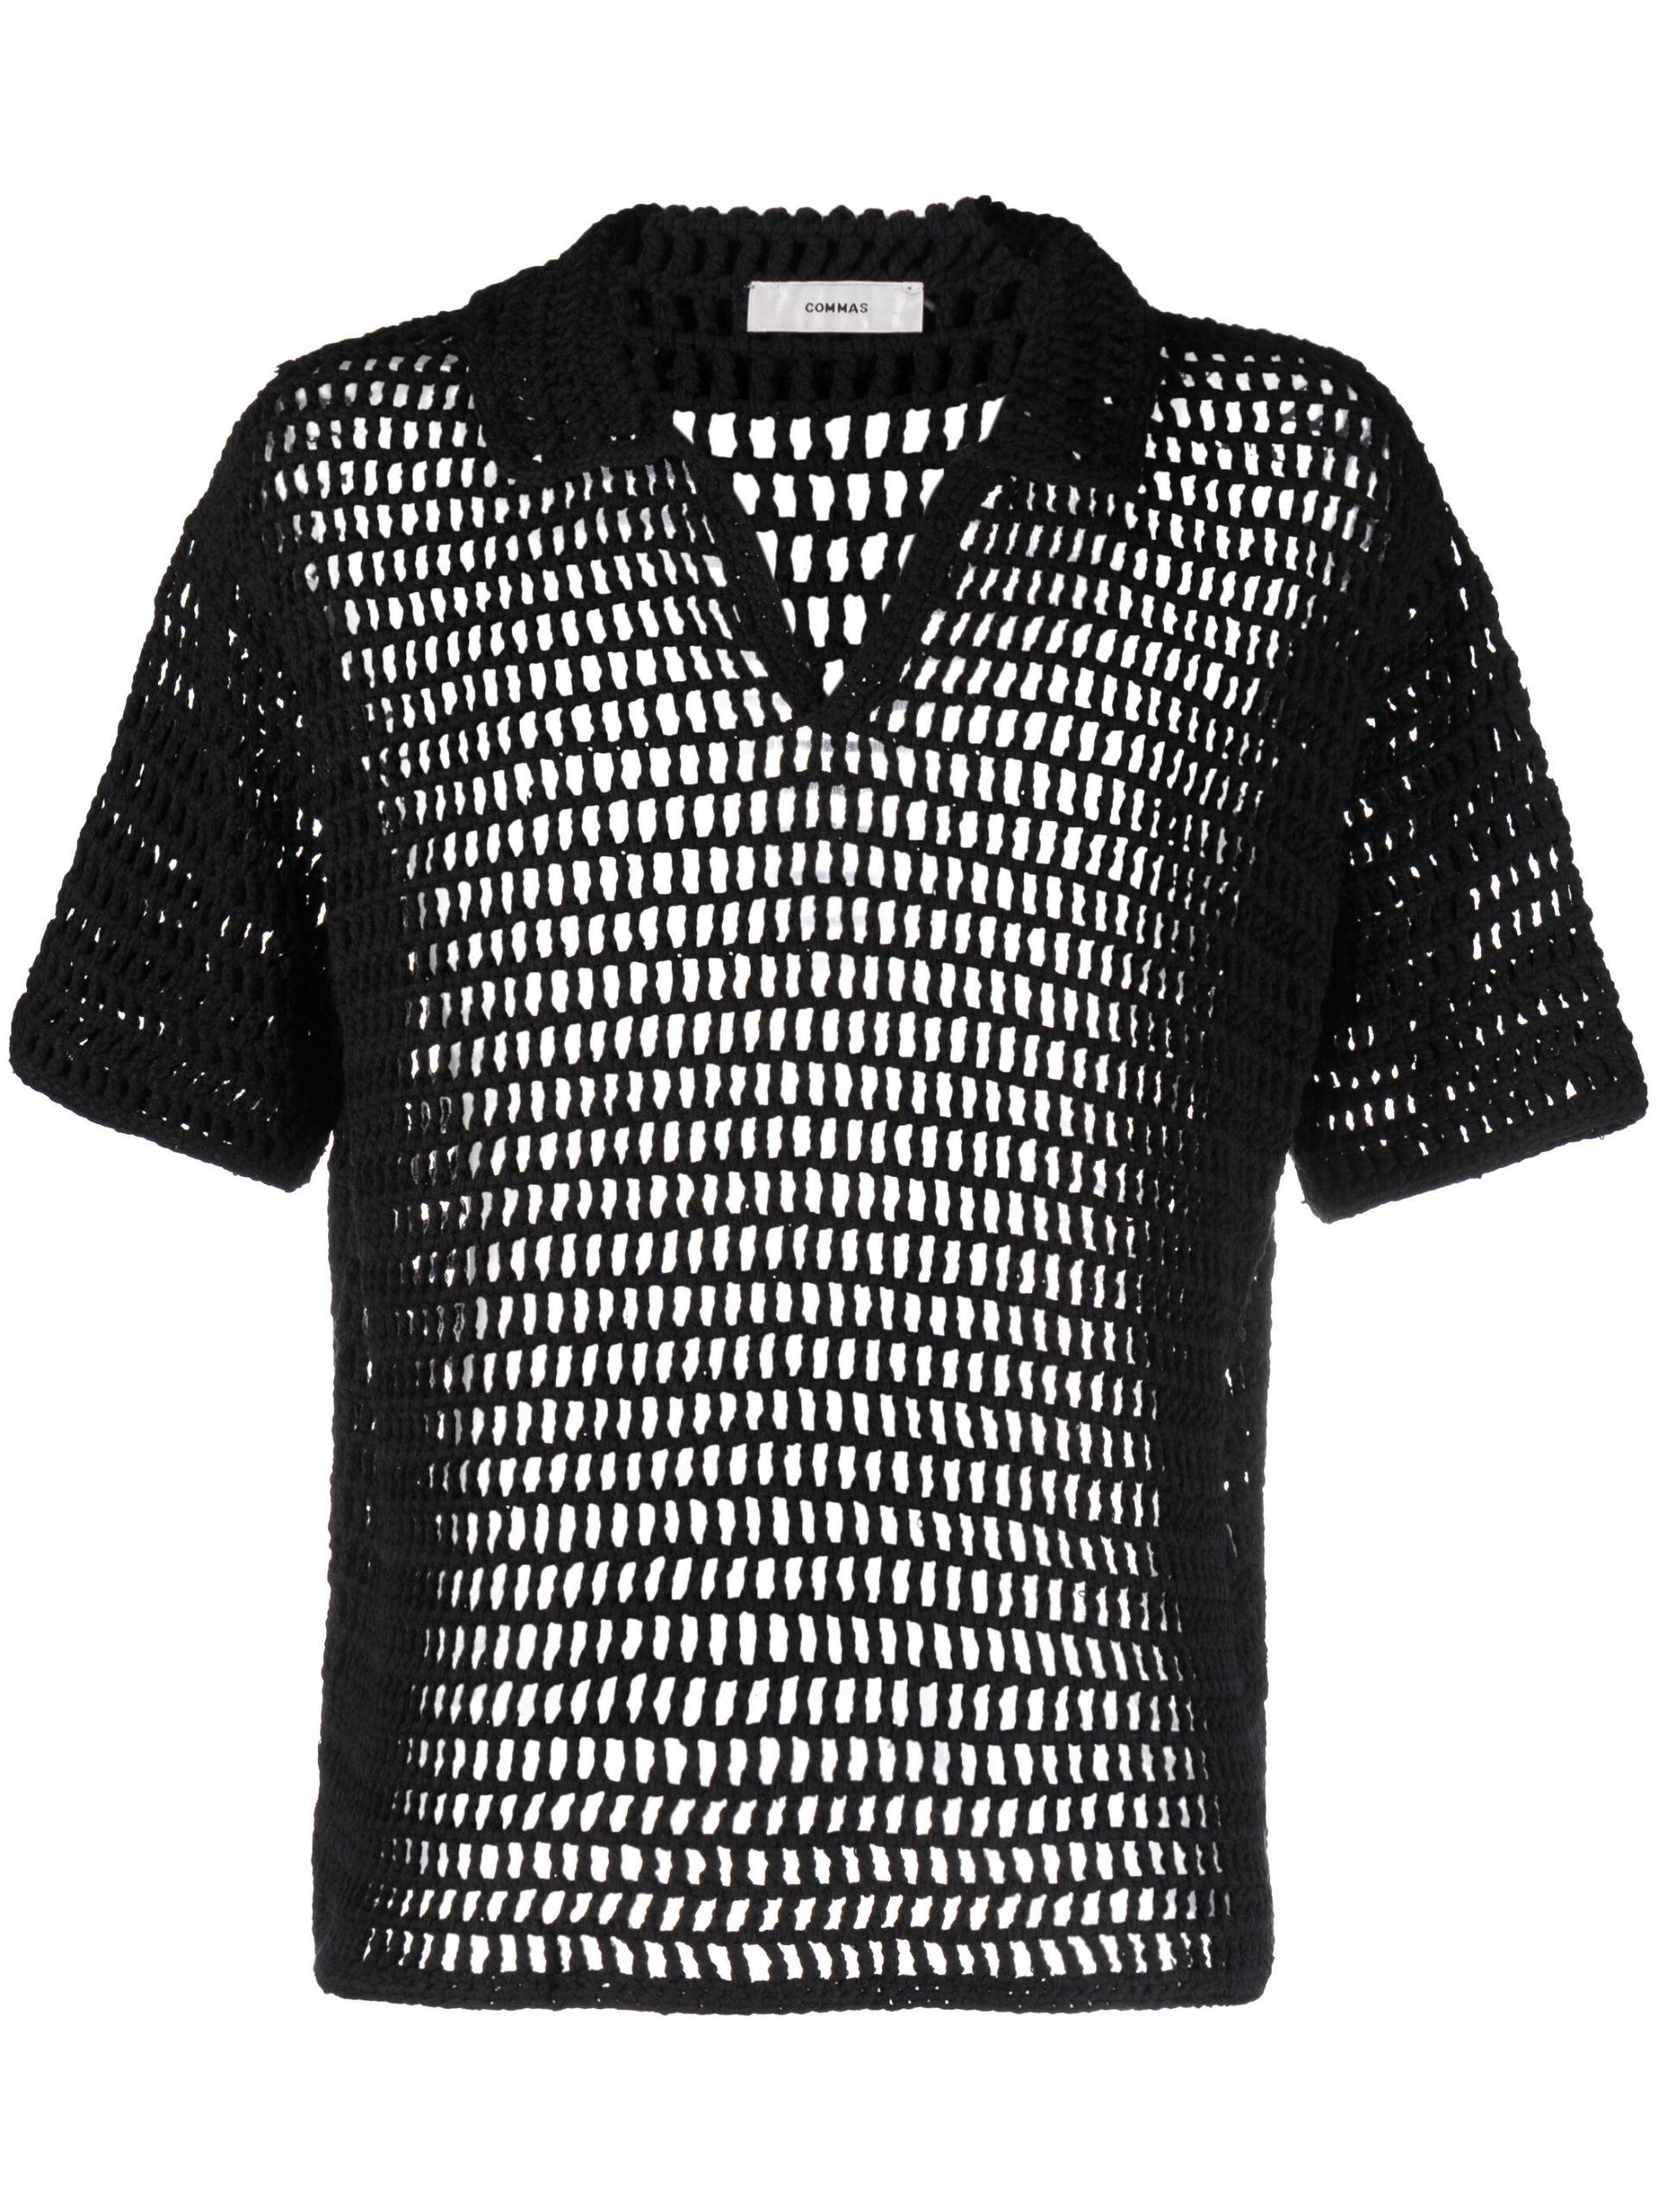 Commas Crochet Polo Shirt in Black for Men | Lyst UK